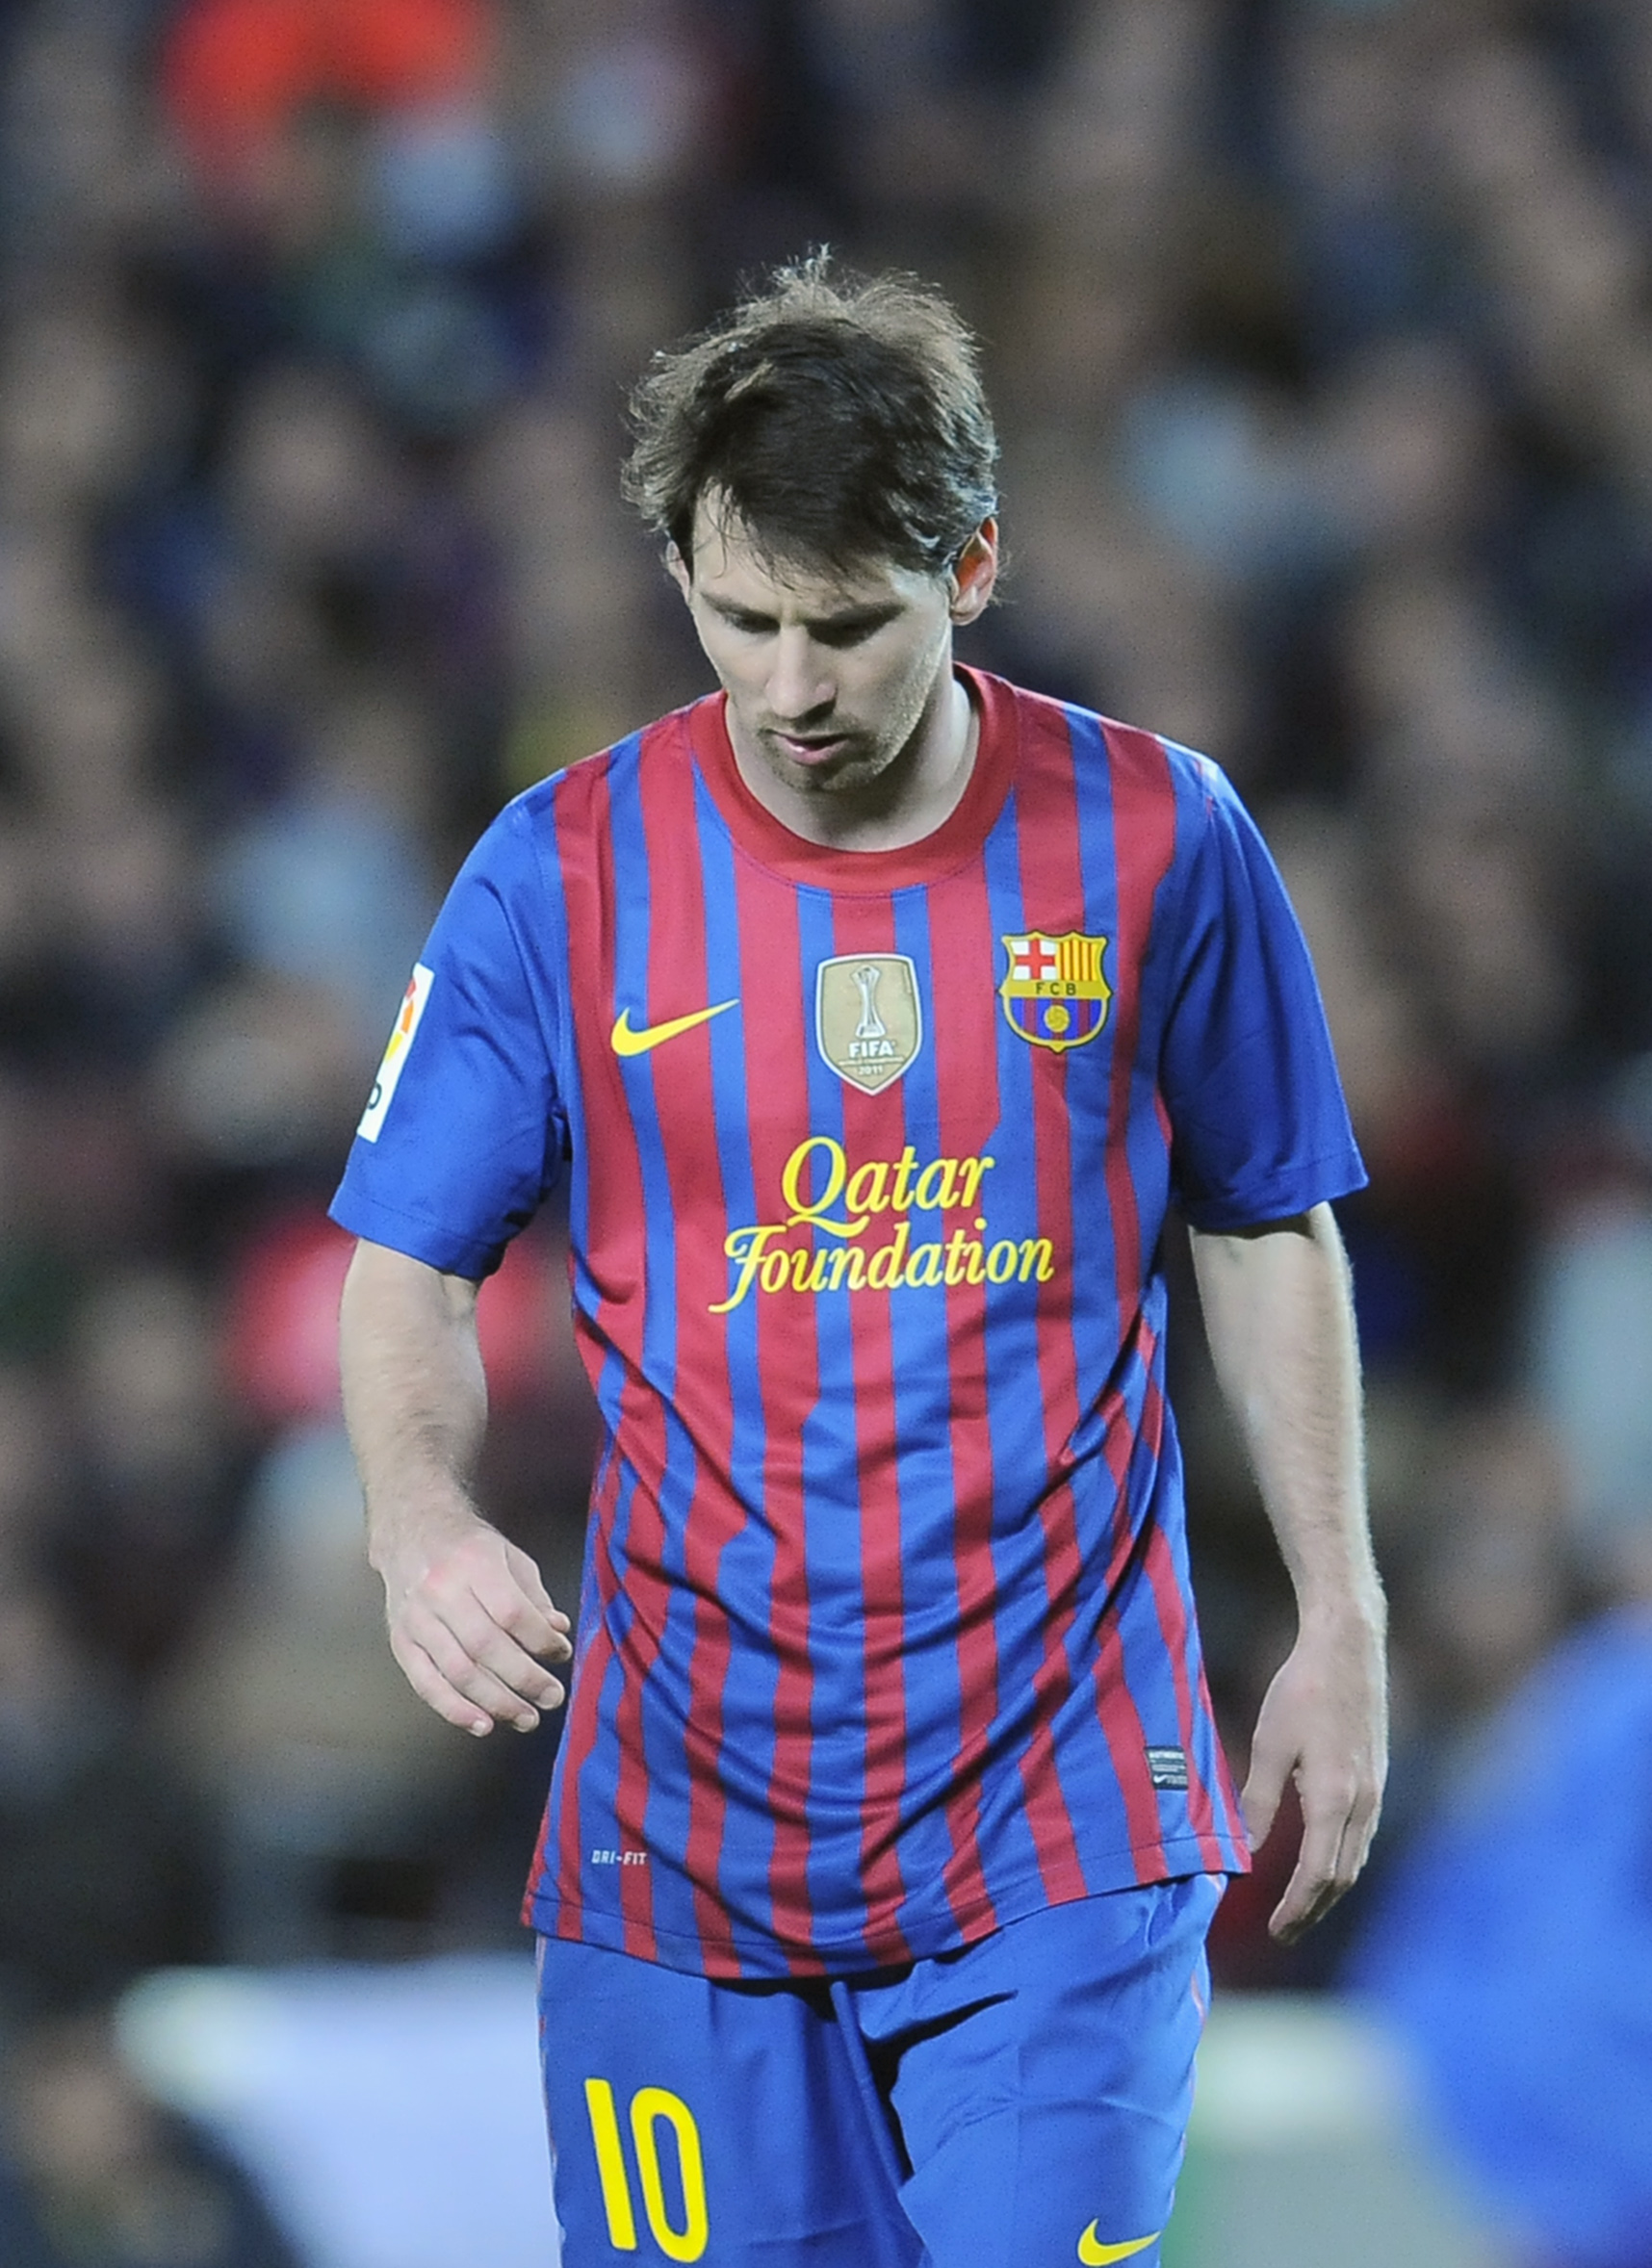 Däremot har Lionel Messi - med Messi-mått - haft det svårt mot engelska klubbar. I kväll måste han leverera igen. 